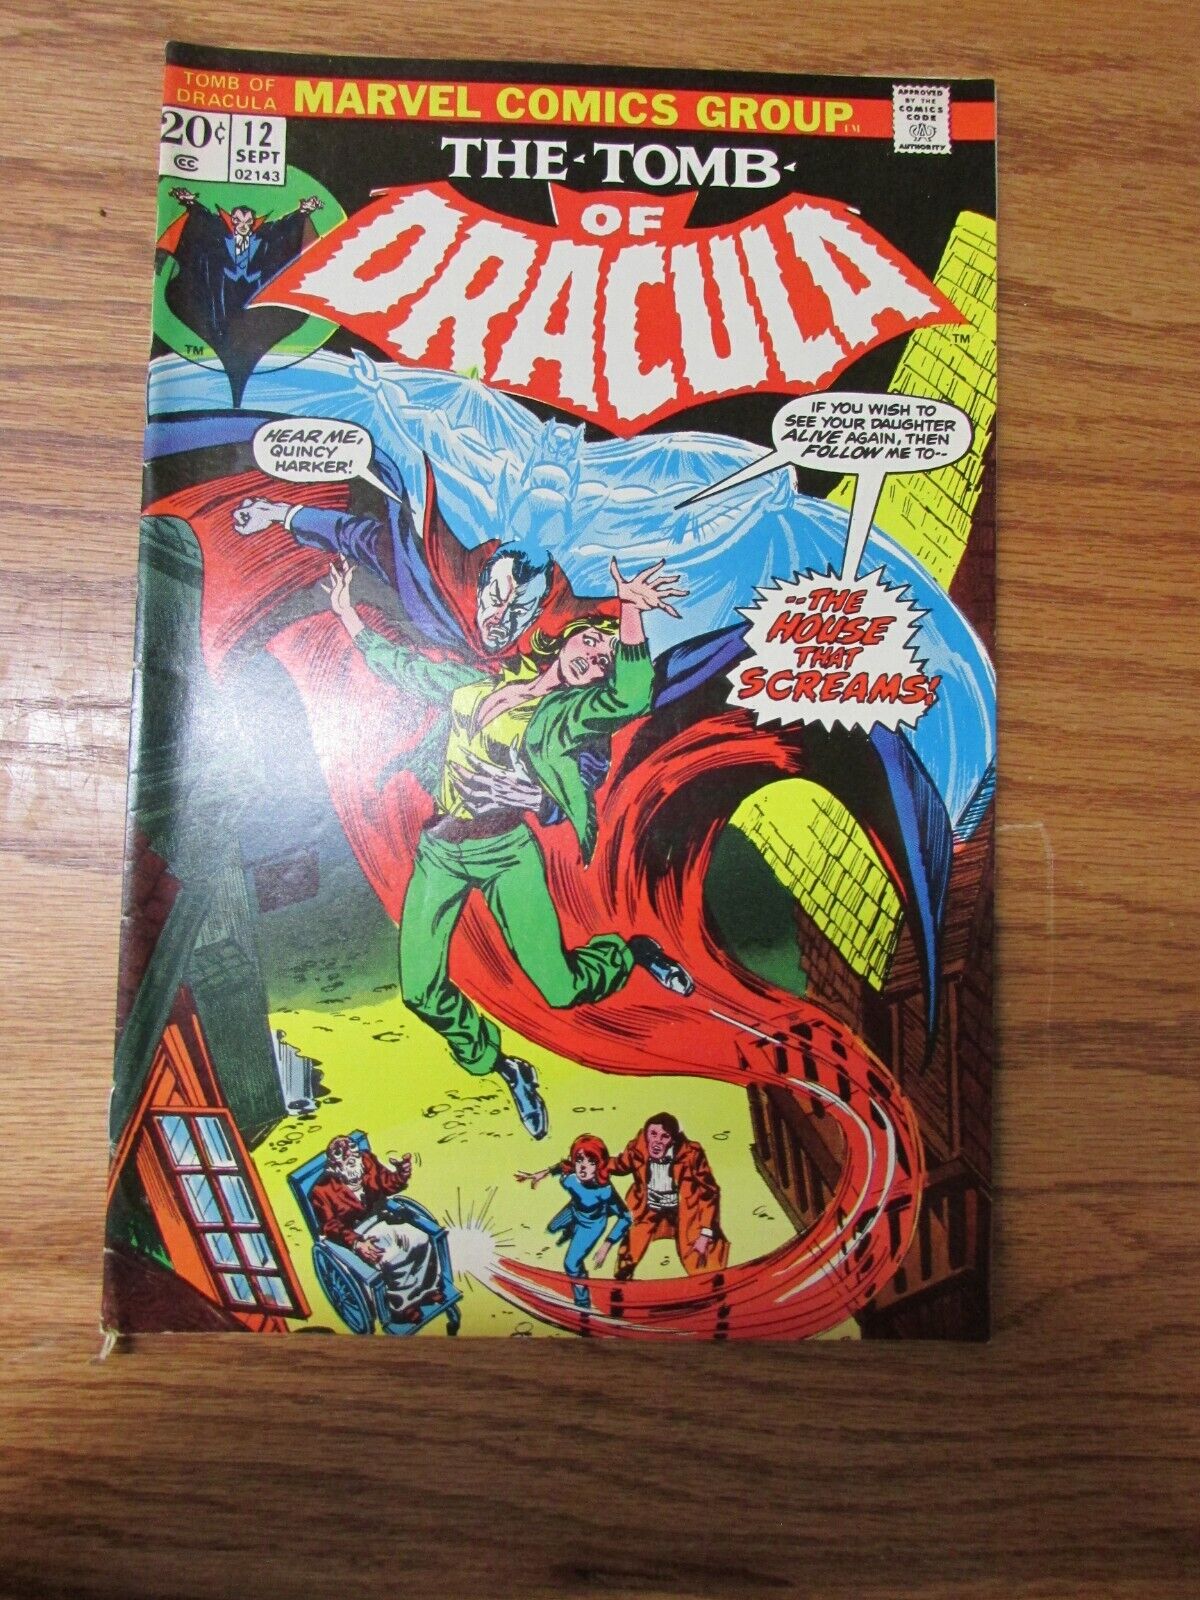 Vintage Marvel Comics The Tomb Of Dracula Vol. 1 No. 12 Sept. 1973 Comic Book